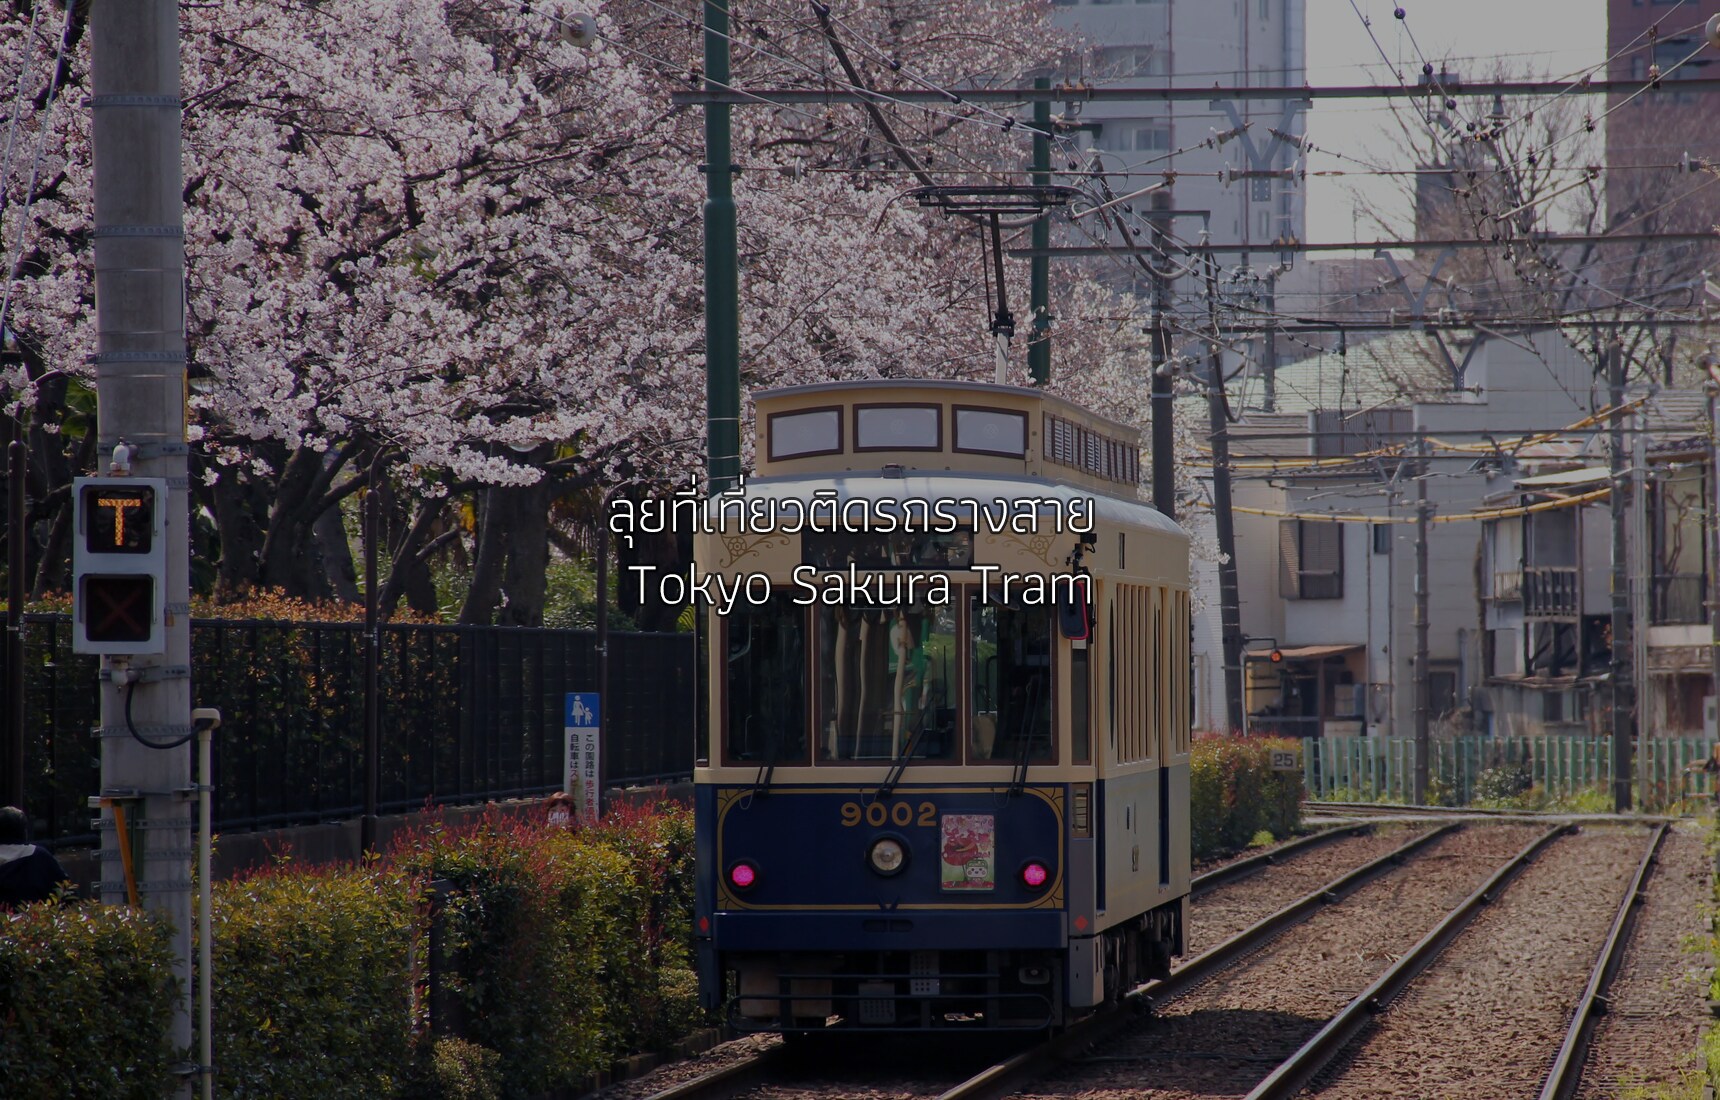 ลุยที่เที่ยวติดรถรางสาย Tokyo Sakura Tram